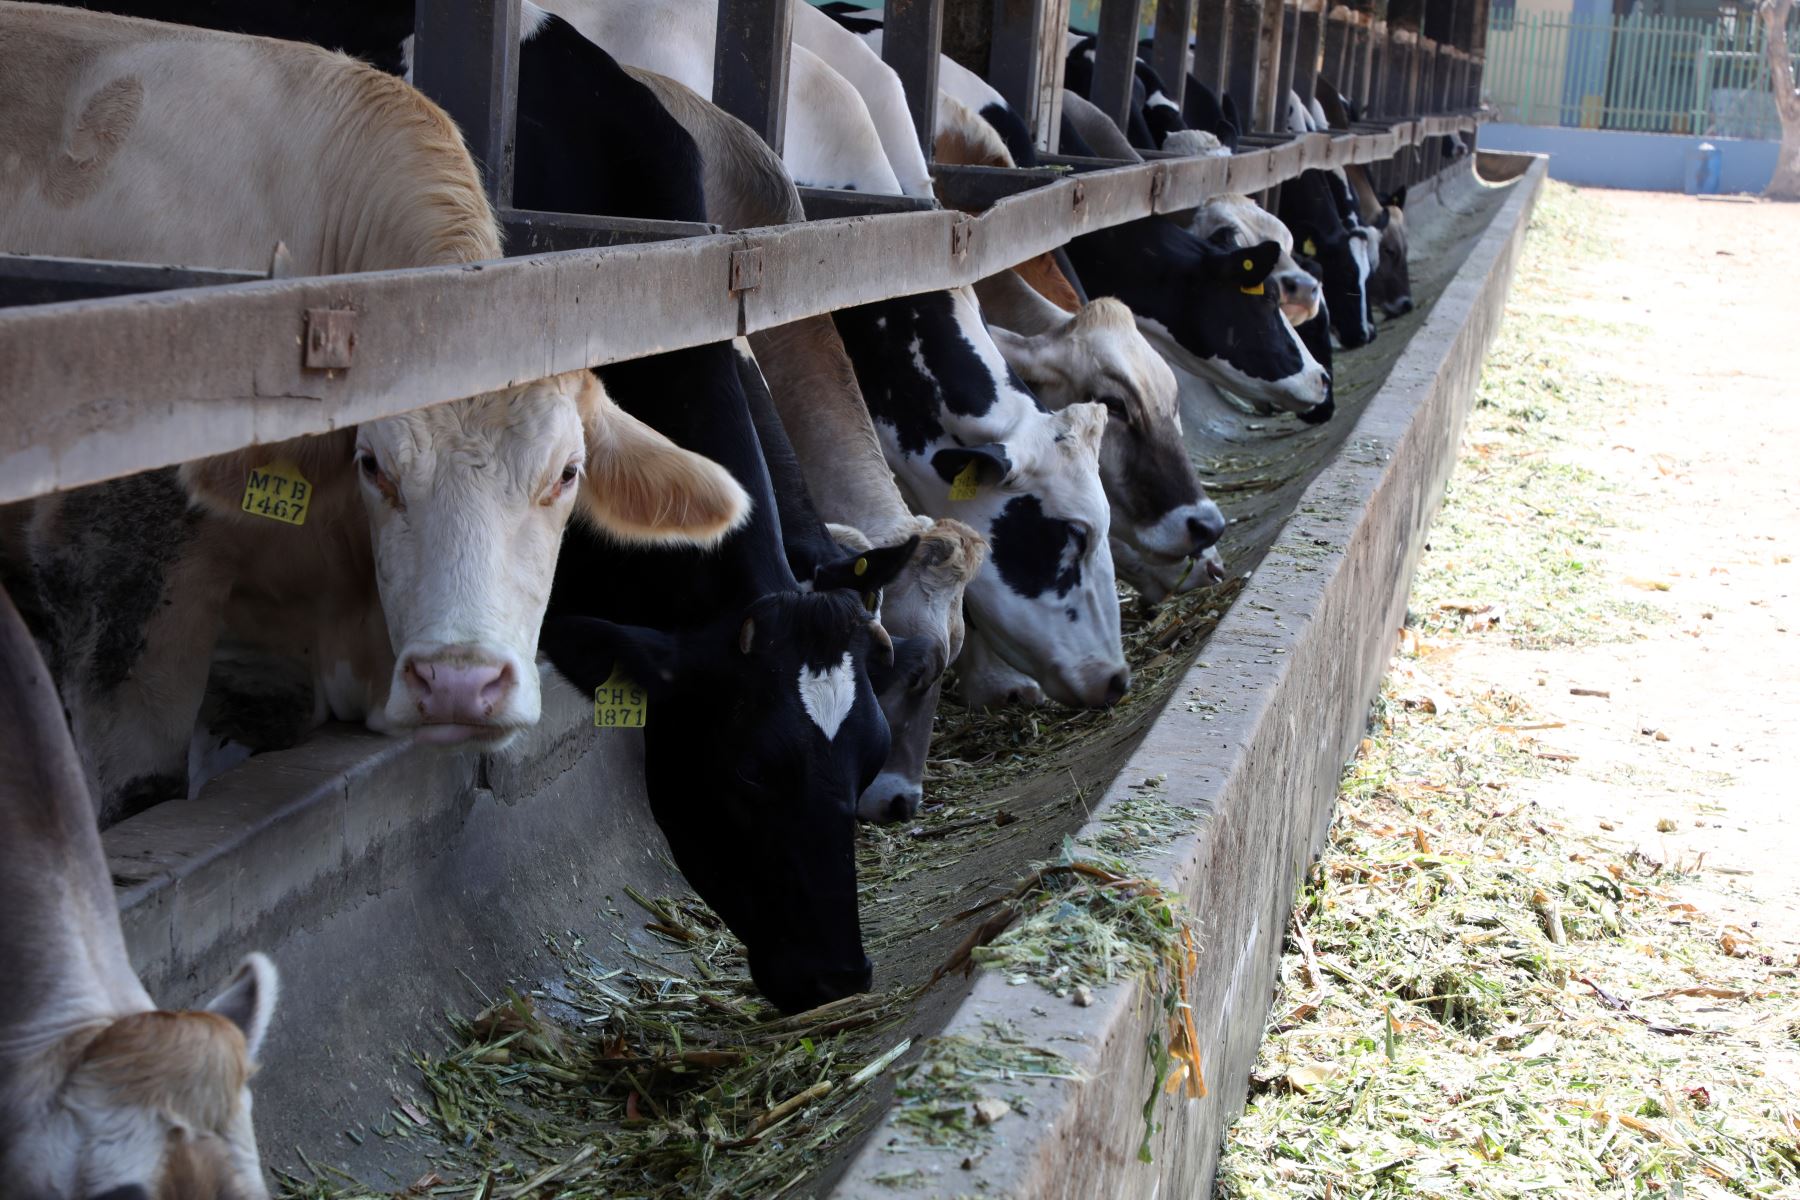 UNALM realiza estudio para disminuir impacto del gas metano en el ambiente. Iniciativa busca contribuir con una ganadería sostenible en nuestro país, a partir de estándares ecológicos. Foto: UNALM